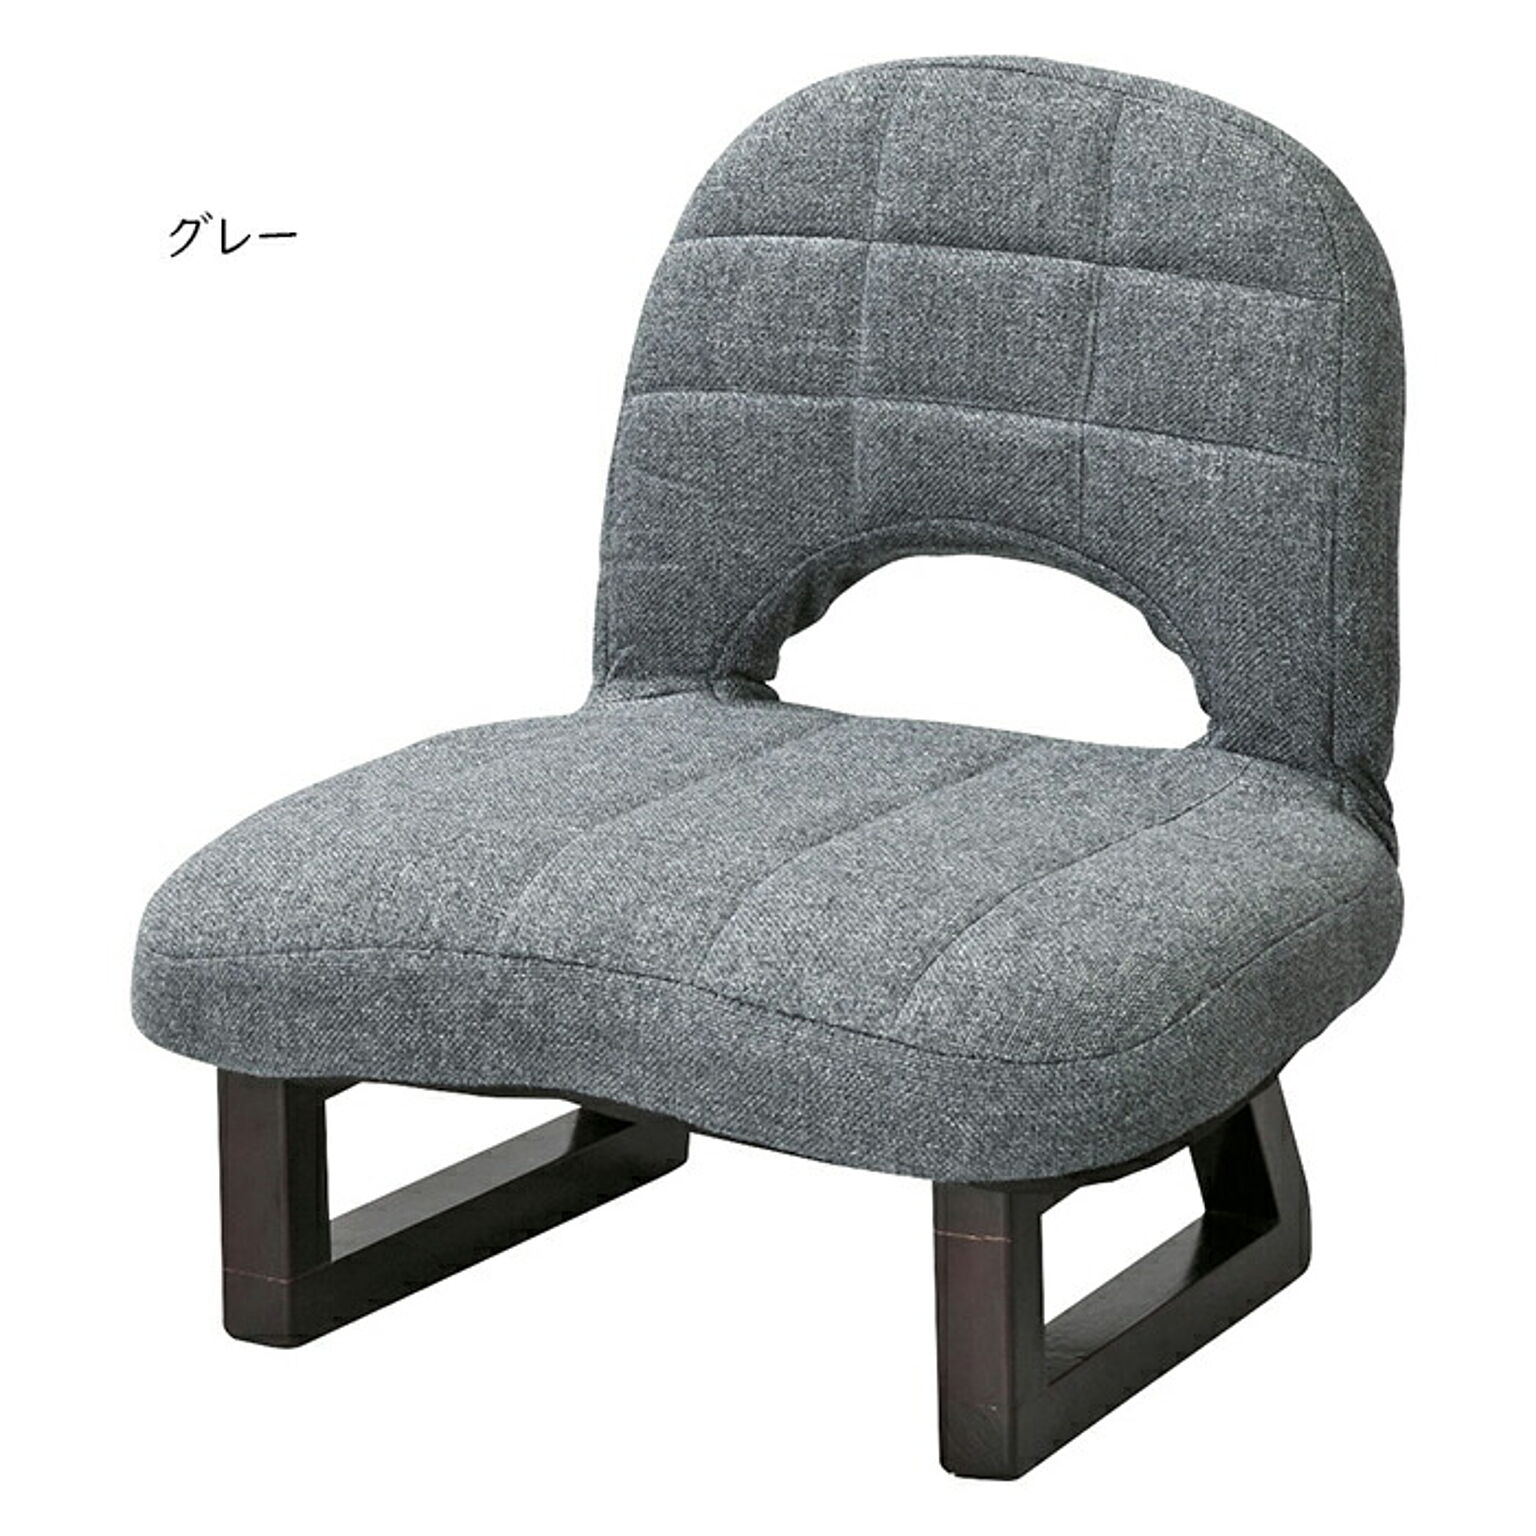 チェア 完成品 背もたれ付正座椅子 LSS-23 幅44x奥行34x高さ49cm 東谷